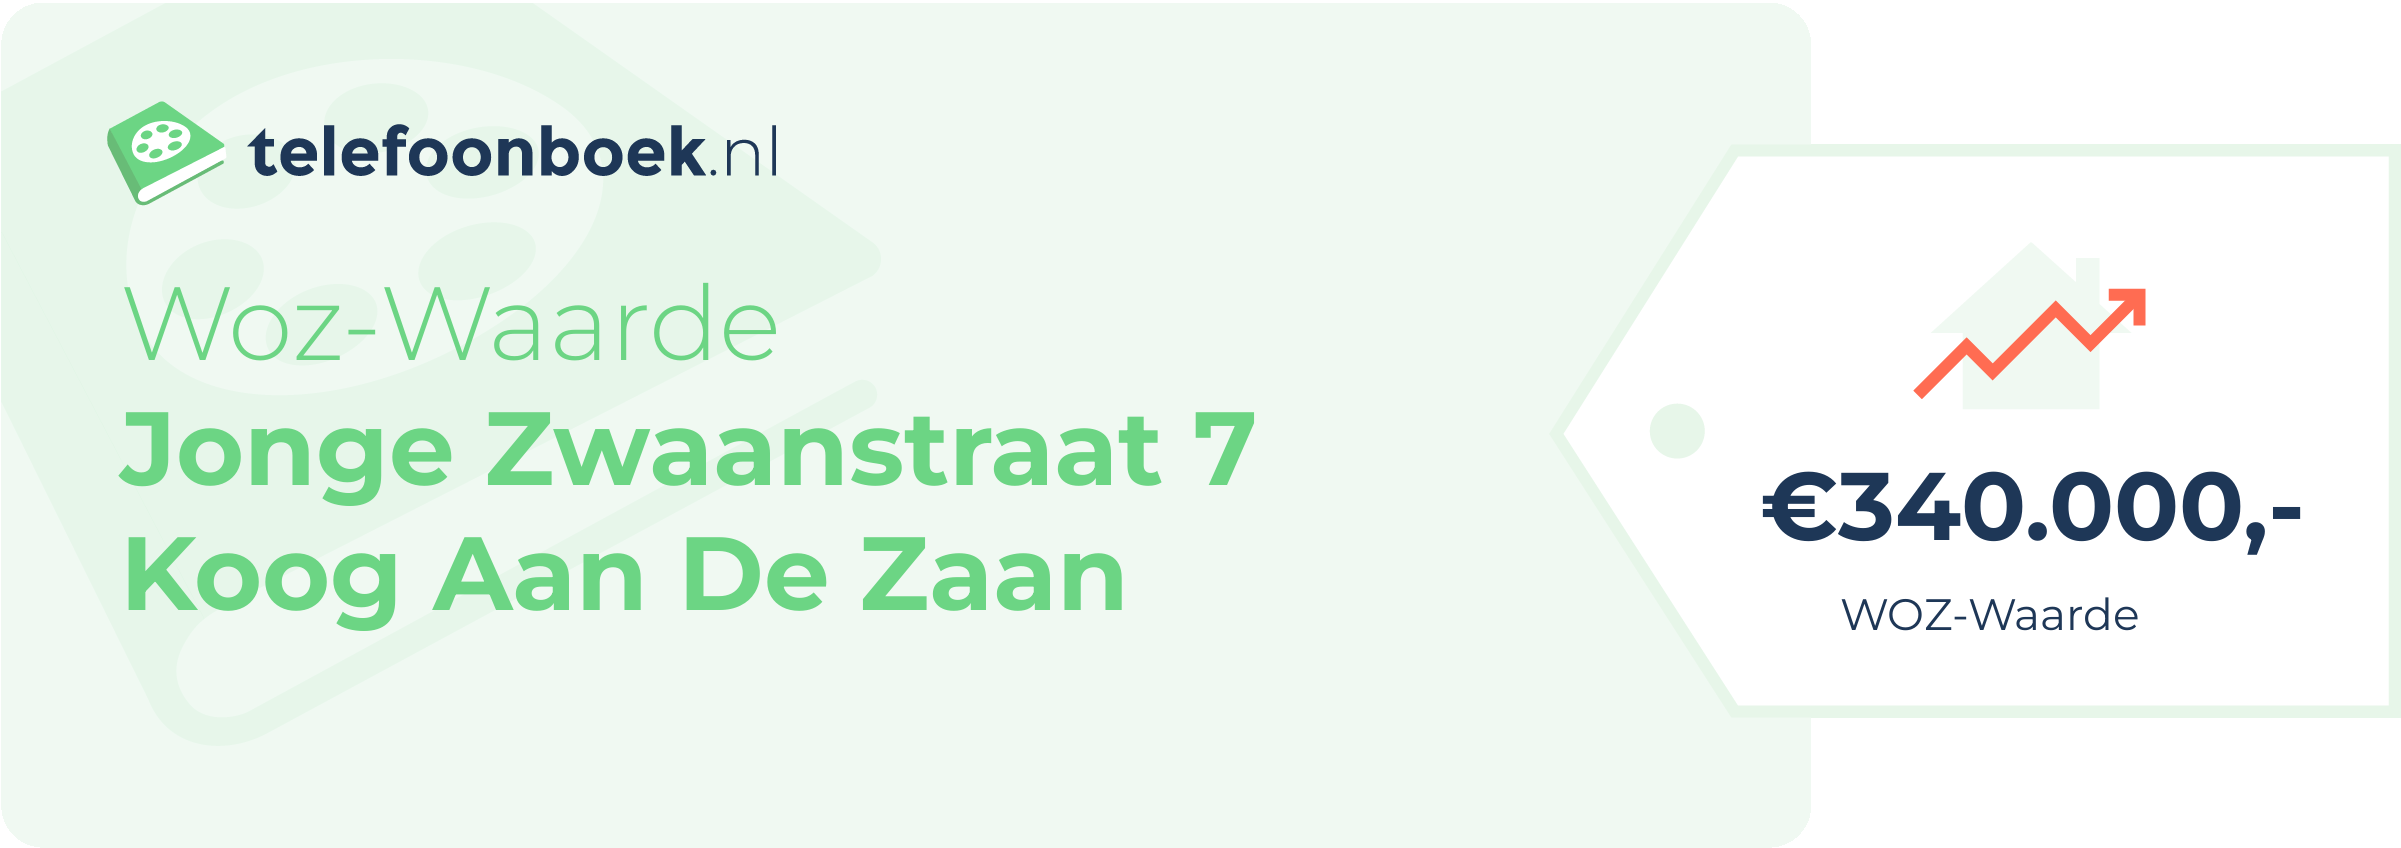 WOZ-waarde Jonge Zwaanstraat 7 Koog Aan De Zaan